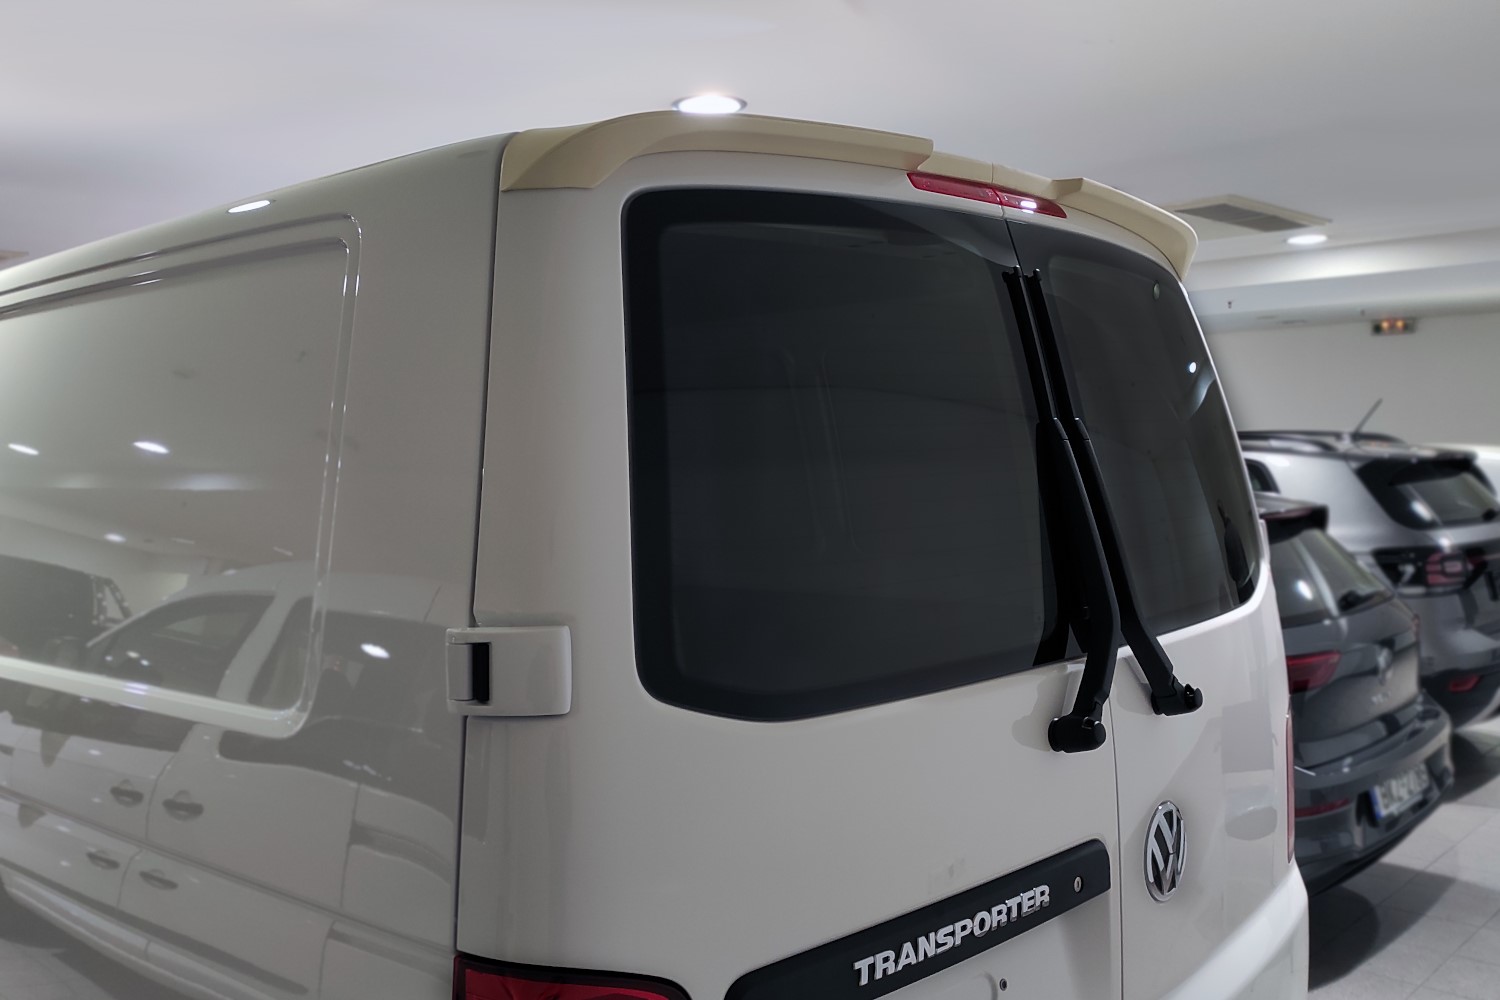 Roof spoiler suitable for Volkswagen Transporter T6 - T6.1 2015-present